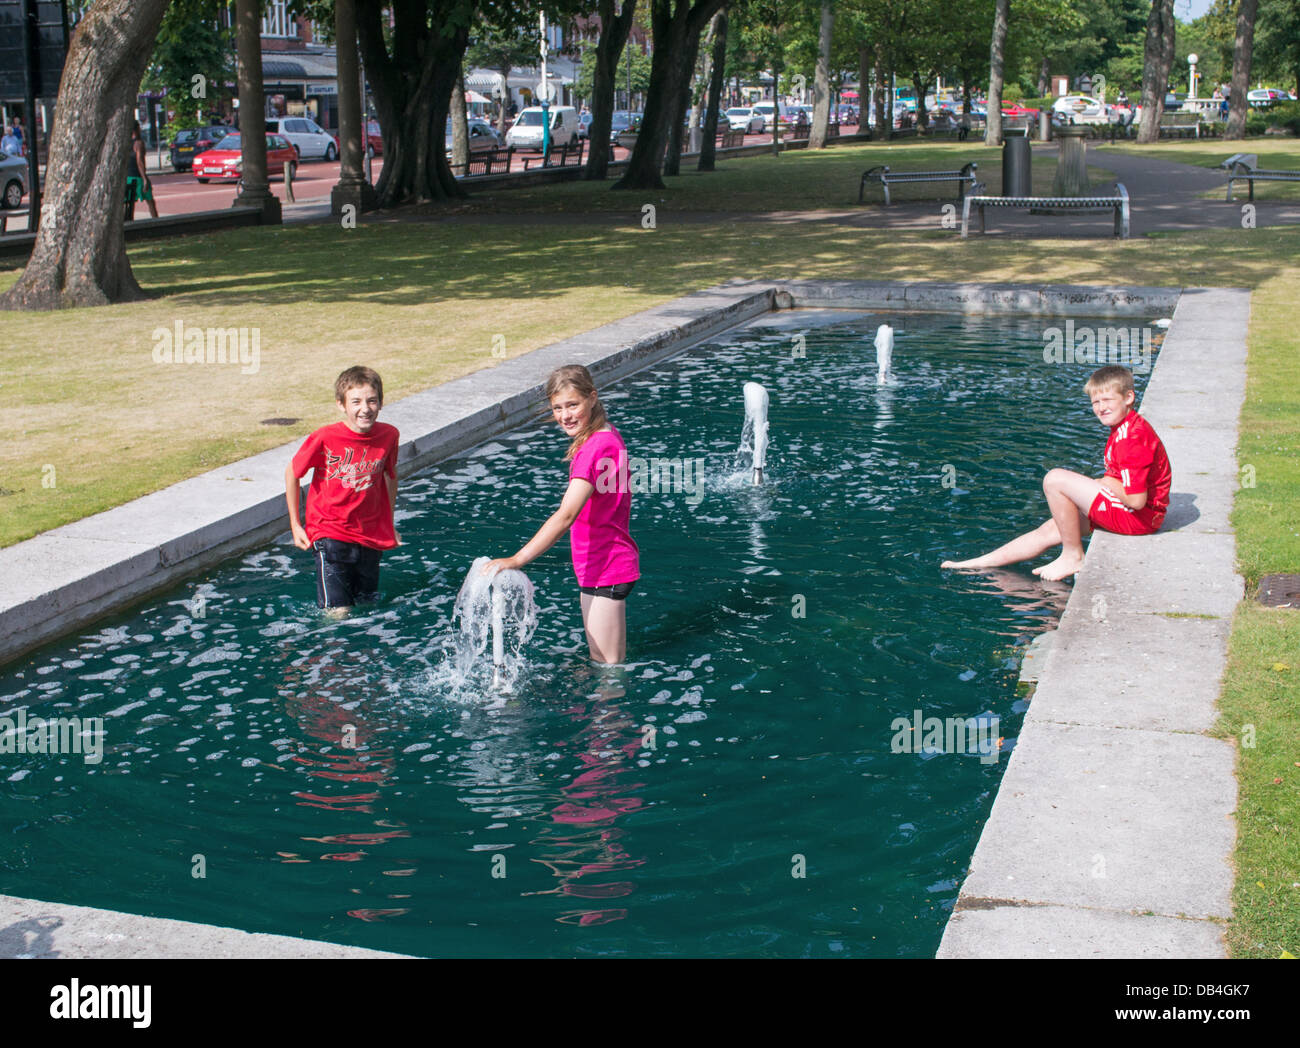 Les enfants se rafraîchir dans l'eau présentent à Southport park pendant l'été, canicule, North West England, UK Banque D'Images